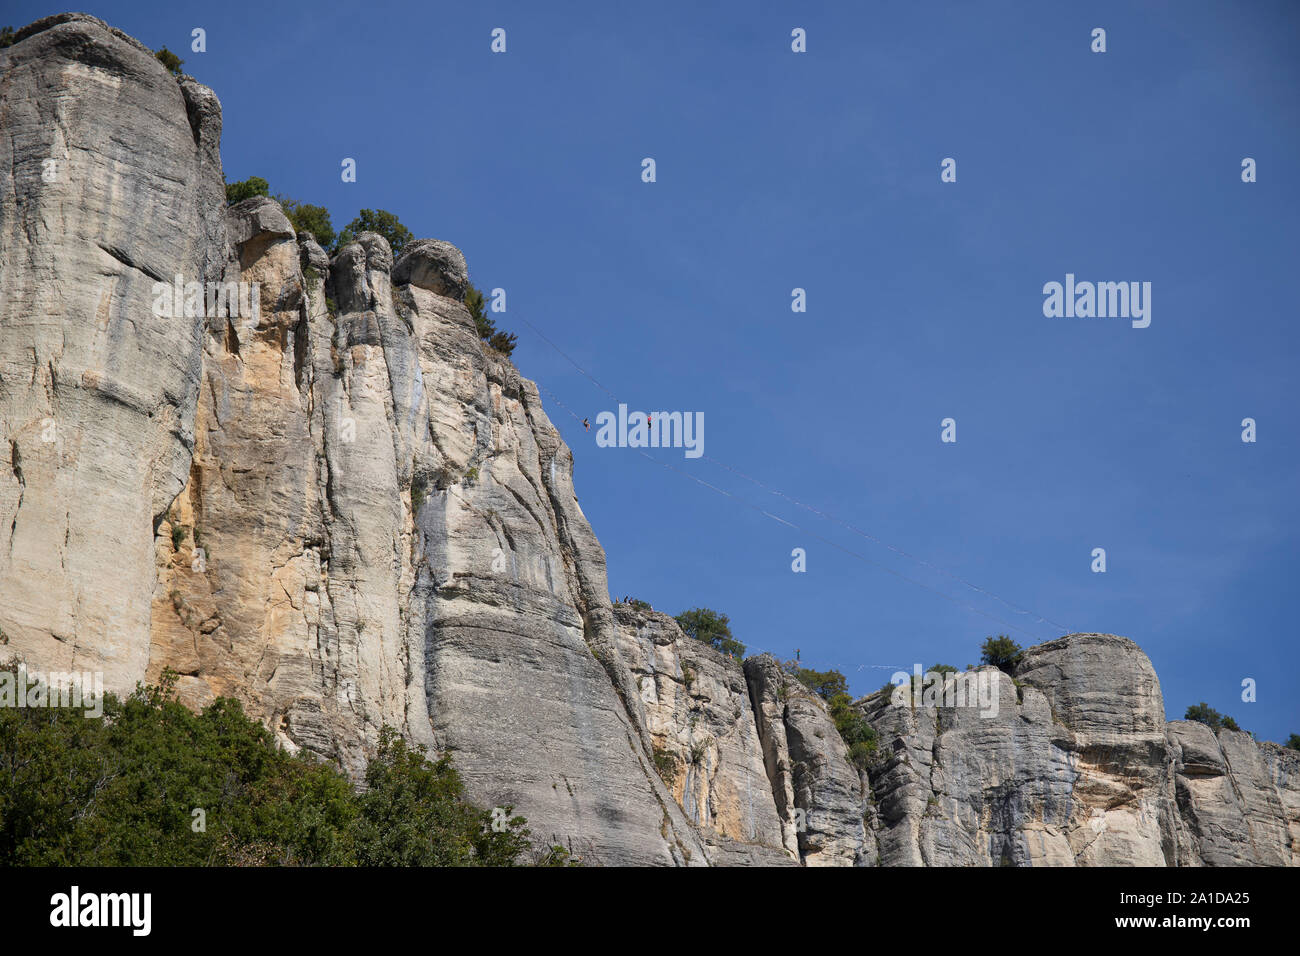 Les falaises verticales de la pierre de Bismantova avec équilibristes et le ciel bleu en arrière-plan. Banque D'Images